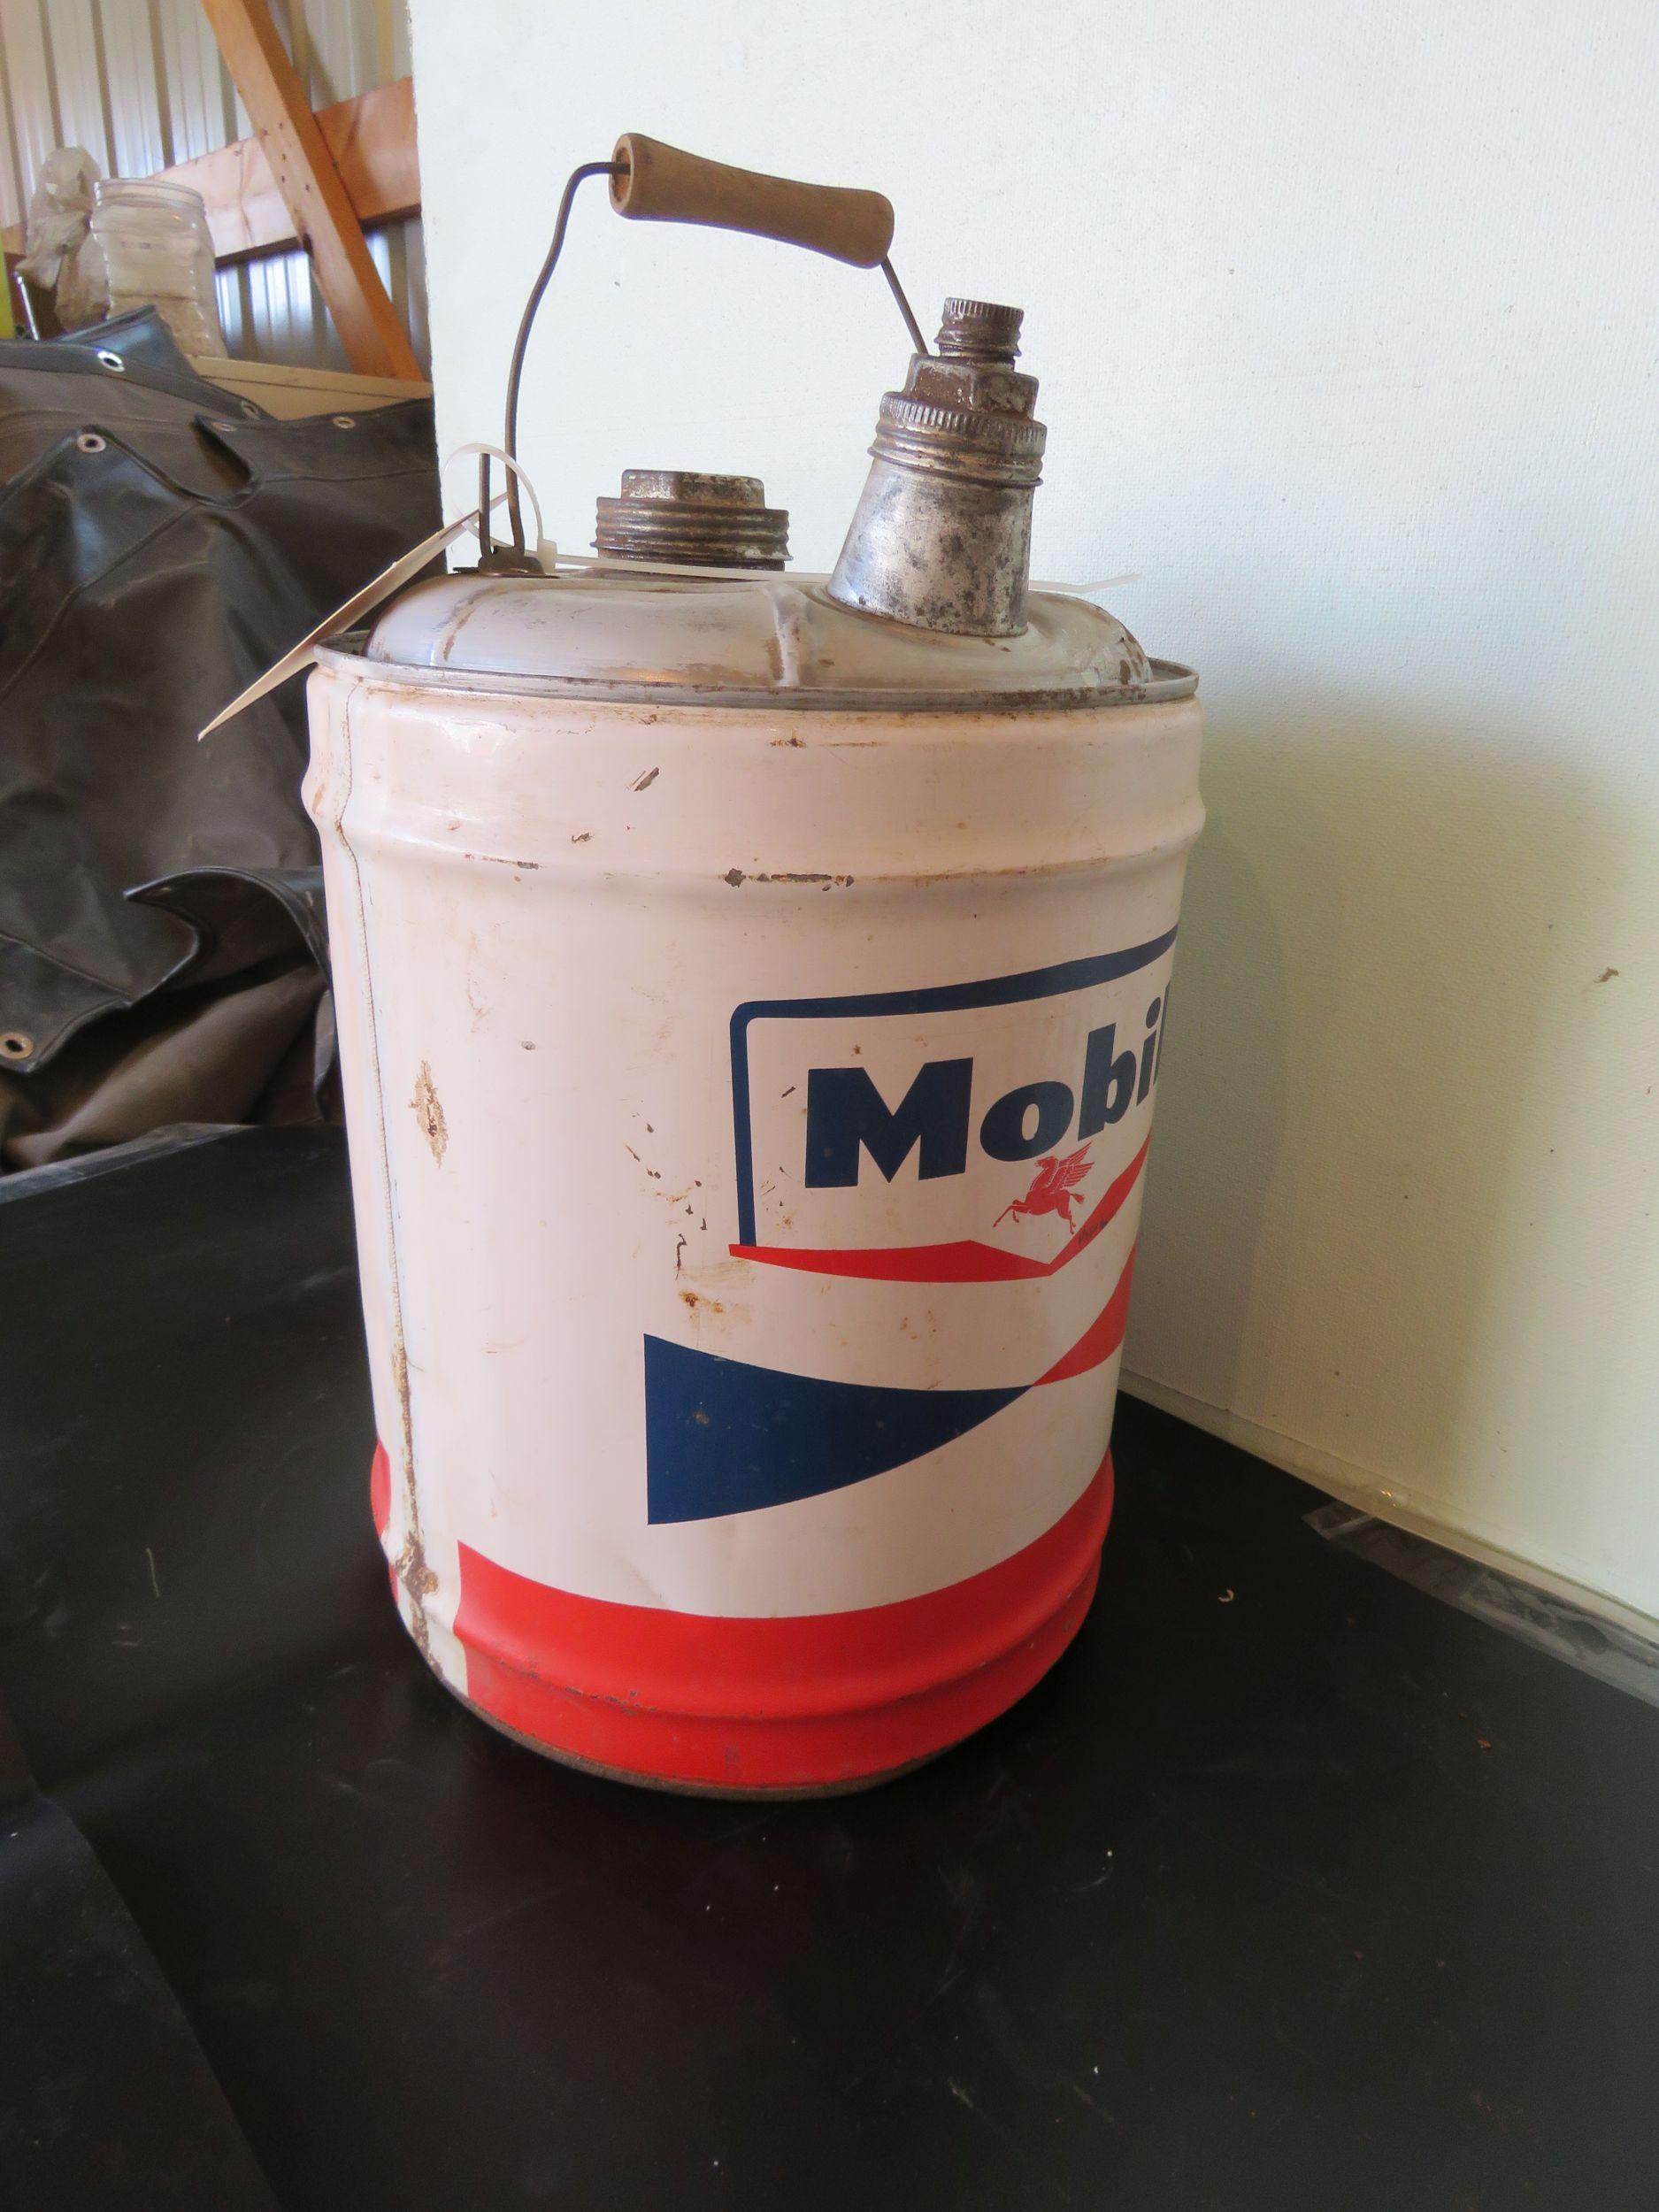 Mobil 5 Gallon Oil Can